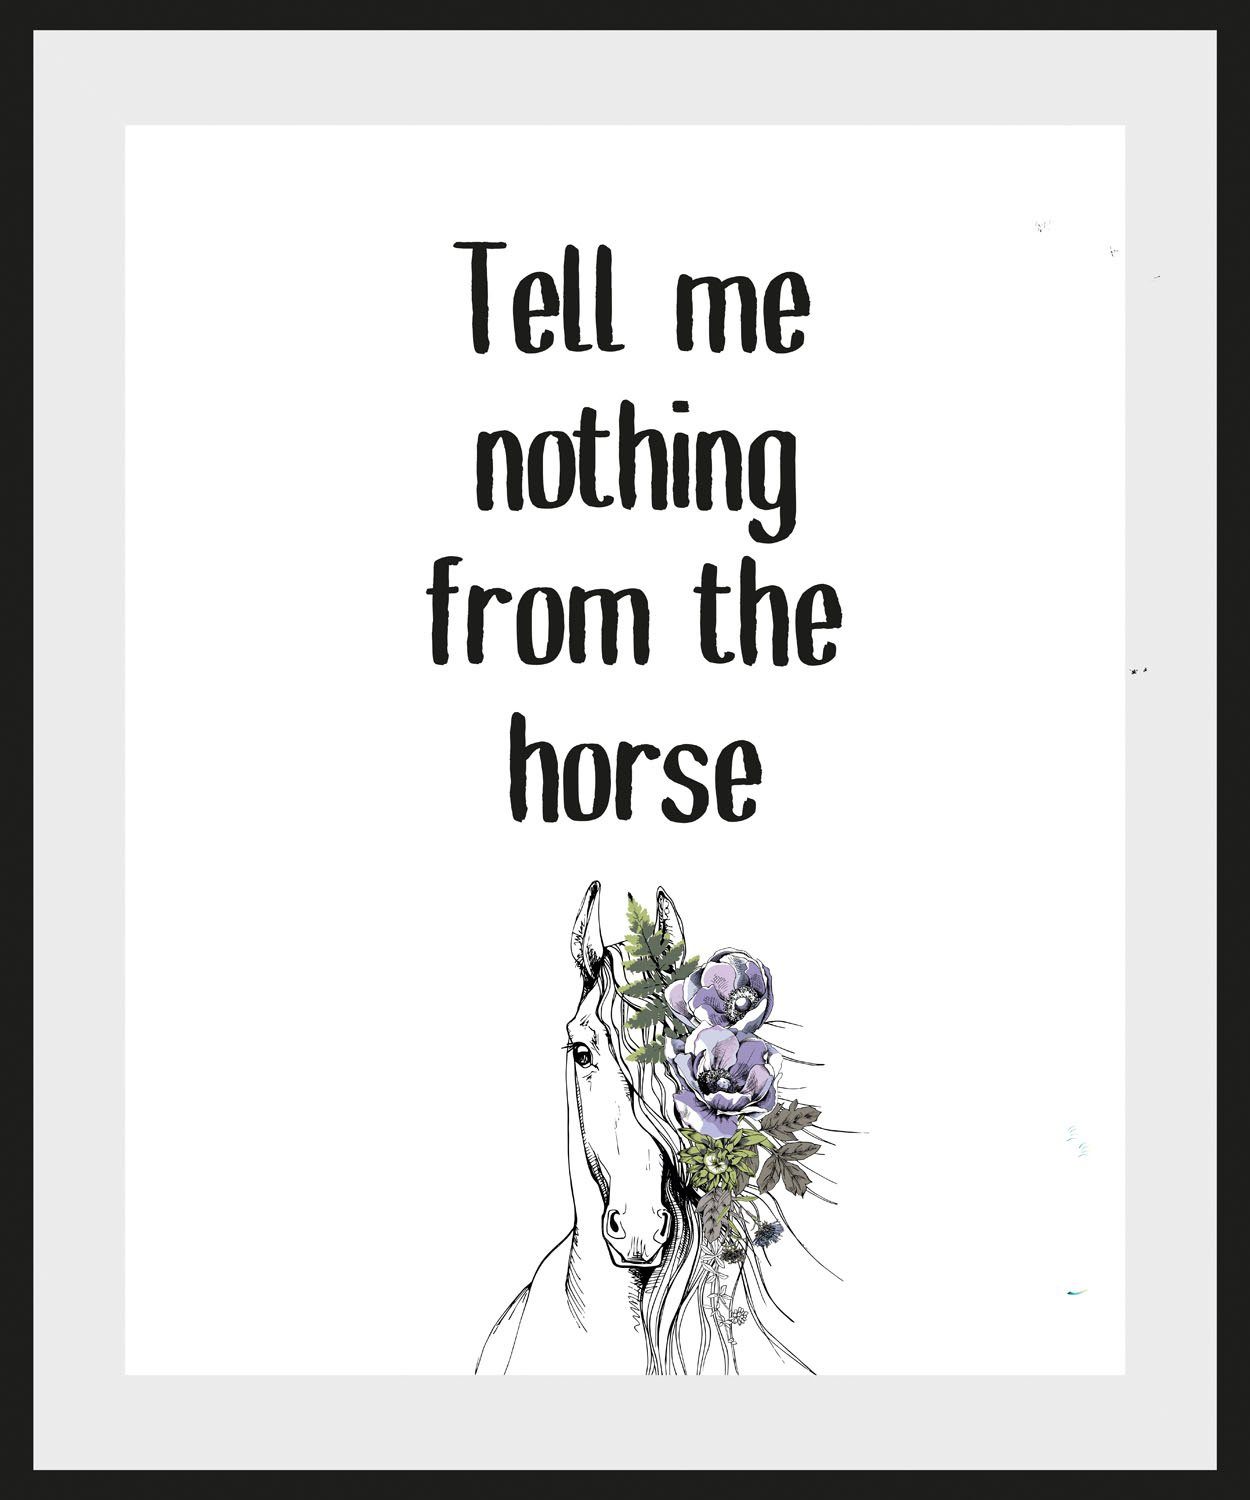 Tell schwarz/weiß (1 Schriftzug horse, the queence St) Bild nothing from me